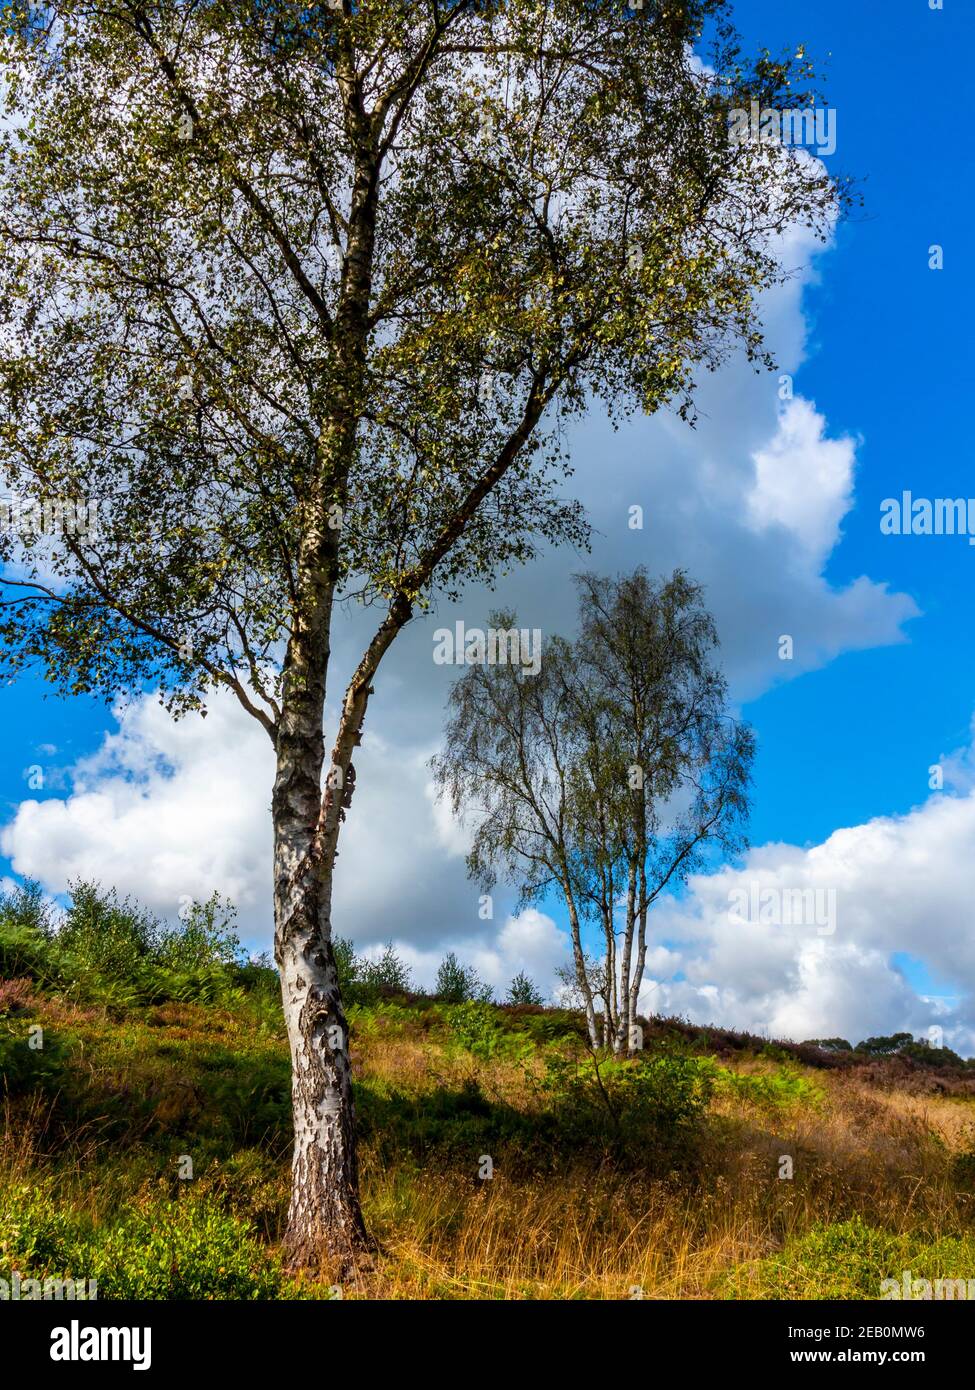 Bouleau argenté betula pendula arbres en été soleil sur Cannock Chase dans Staffordshire Angleterre Royaume-Uni. Banque D'Images